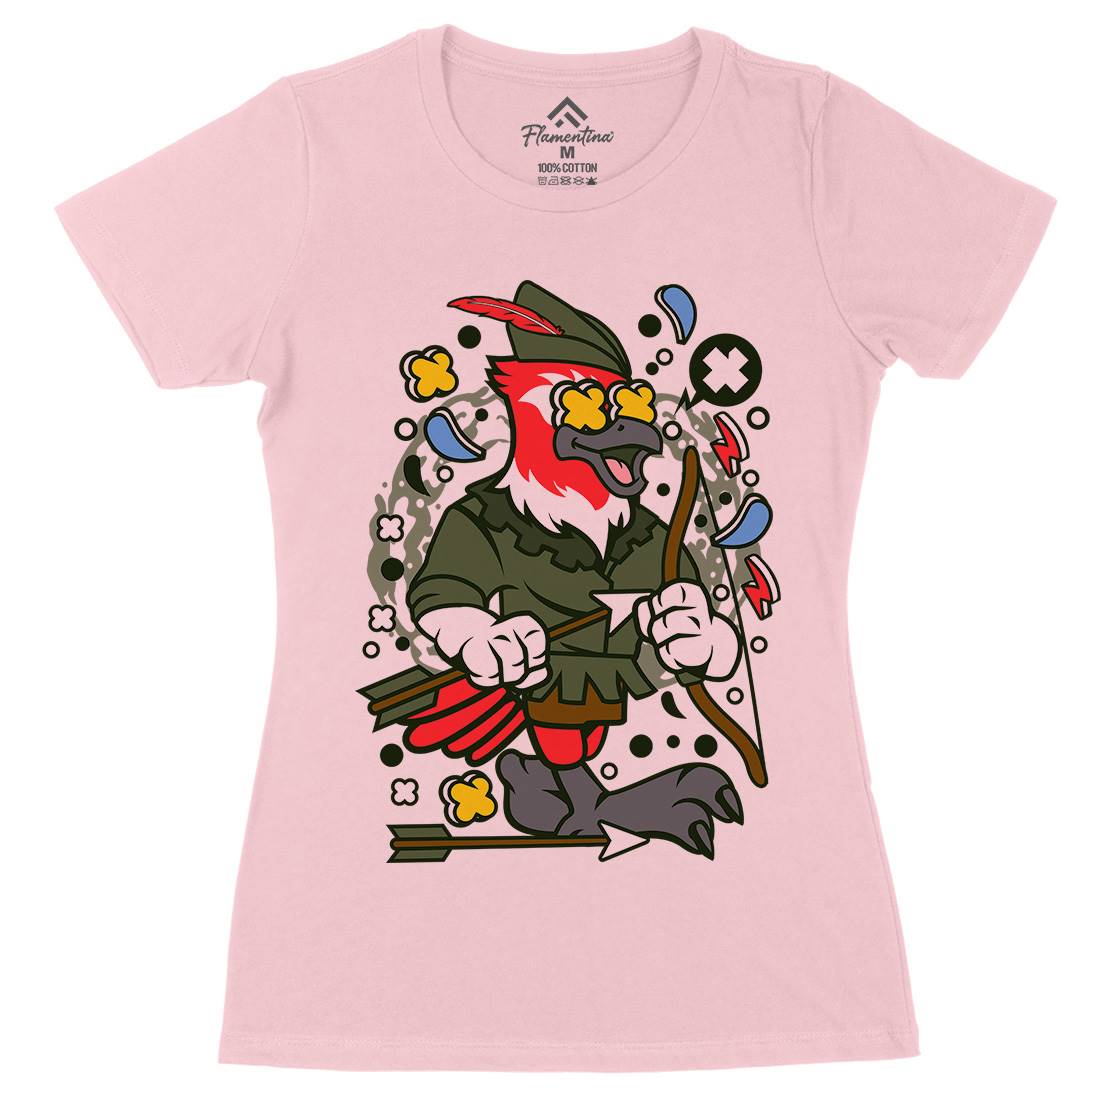 Bird Robin Hood Womens Organic Crew Neck T-Shirt Warriors C503